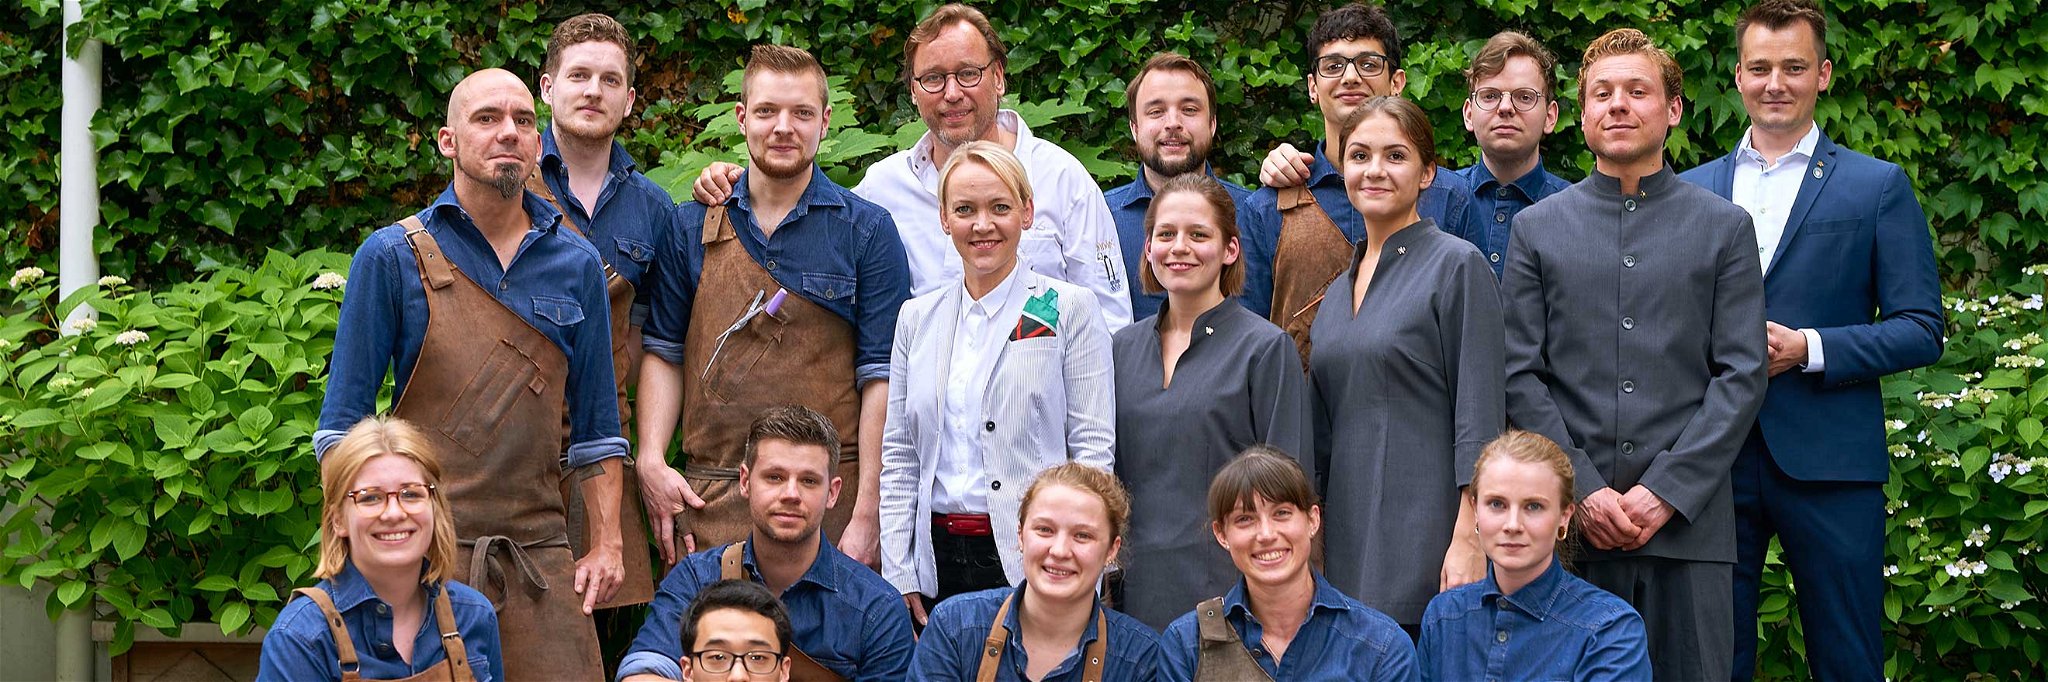 Stehen ab sofort ohne Job da: Spitzenkoch Thomas Bühner und sein Team aus dem »La Vie«